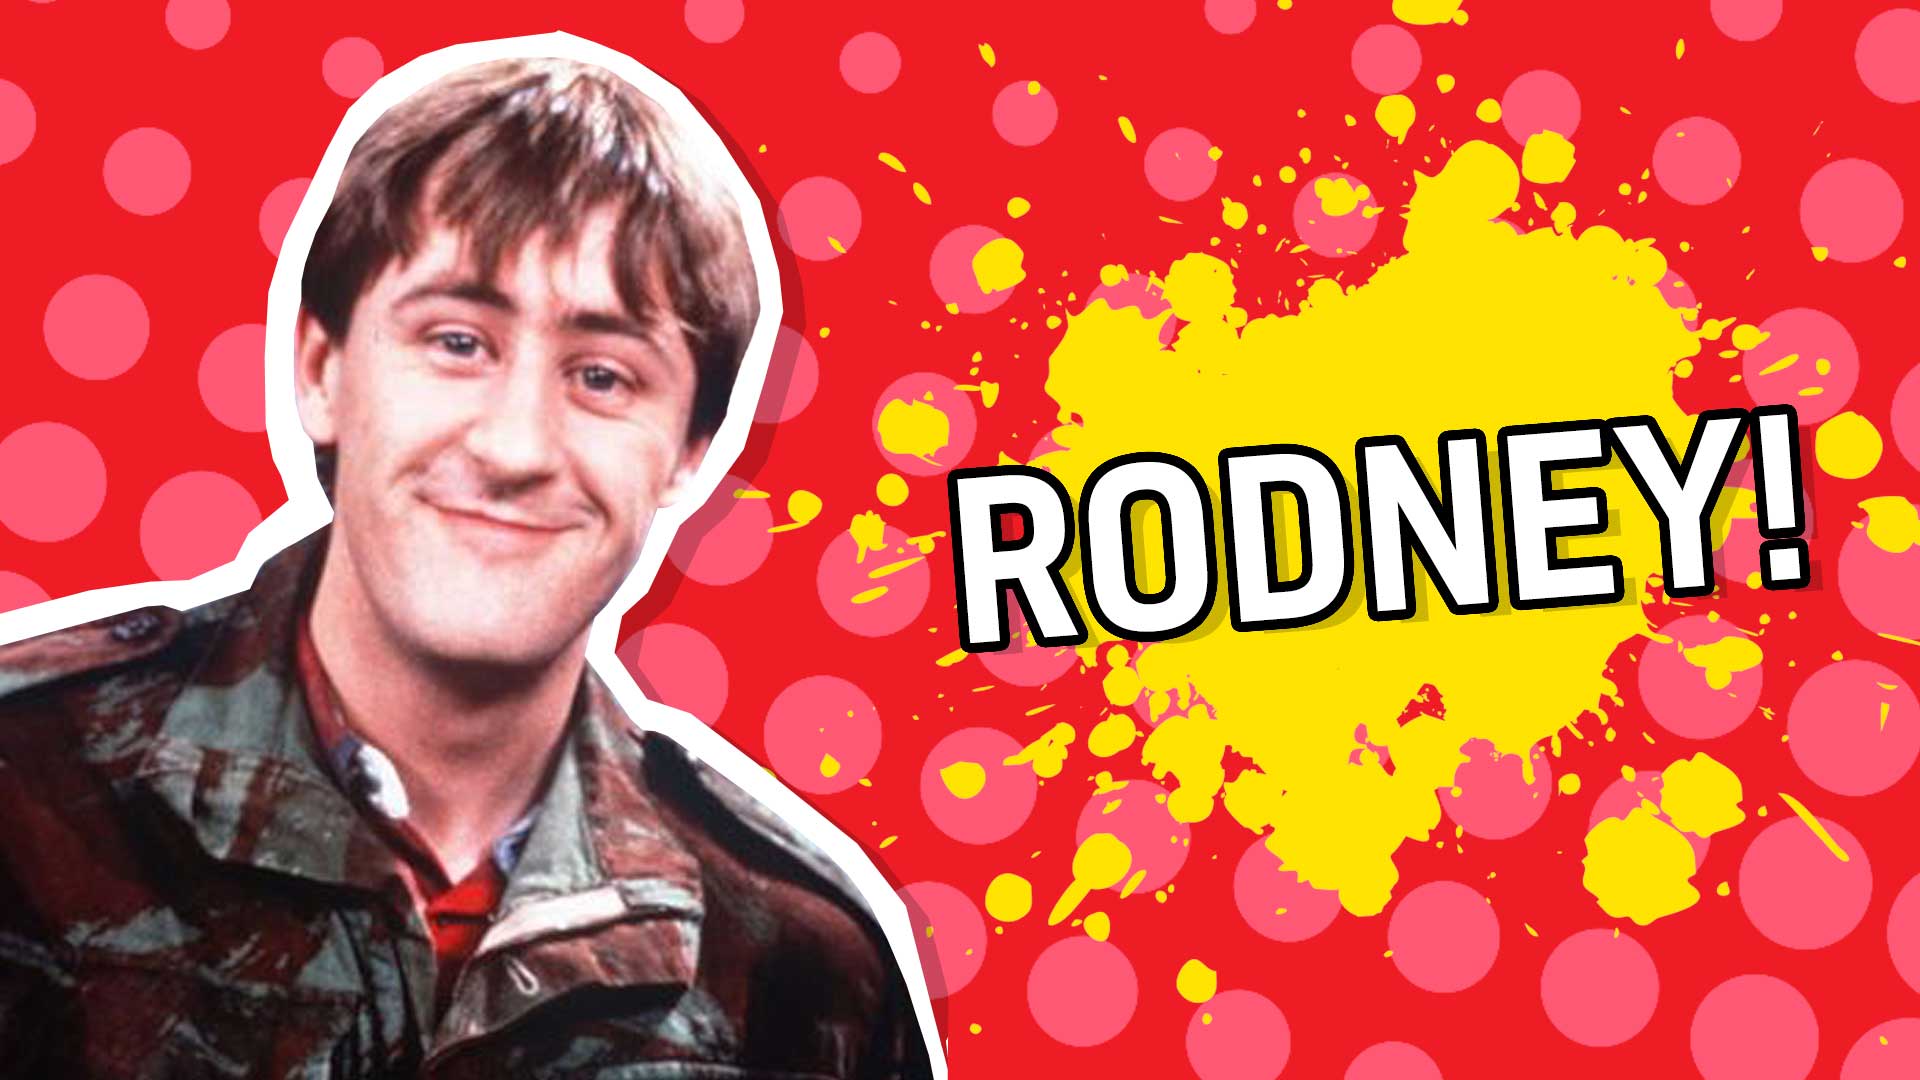 Result: Rodney